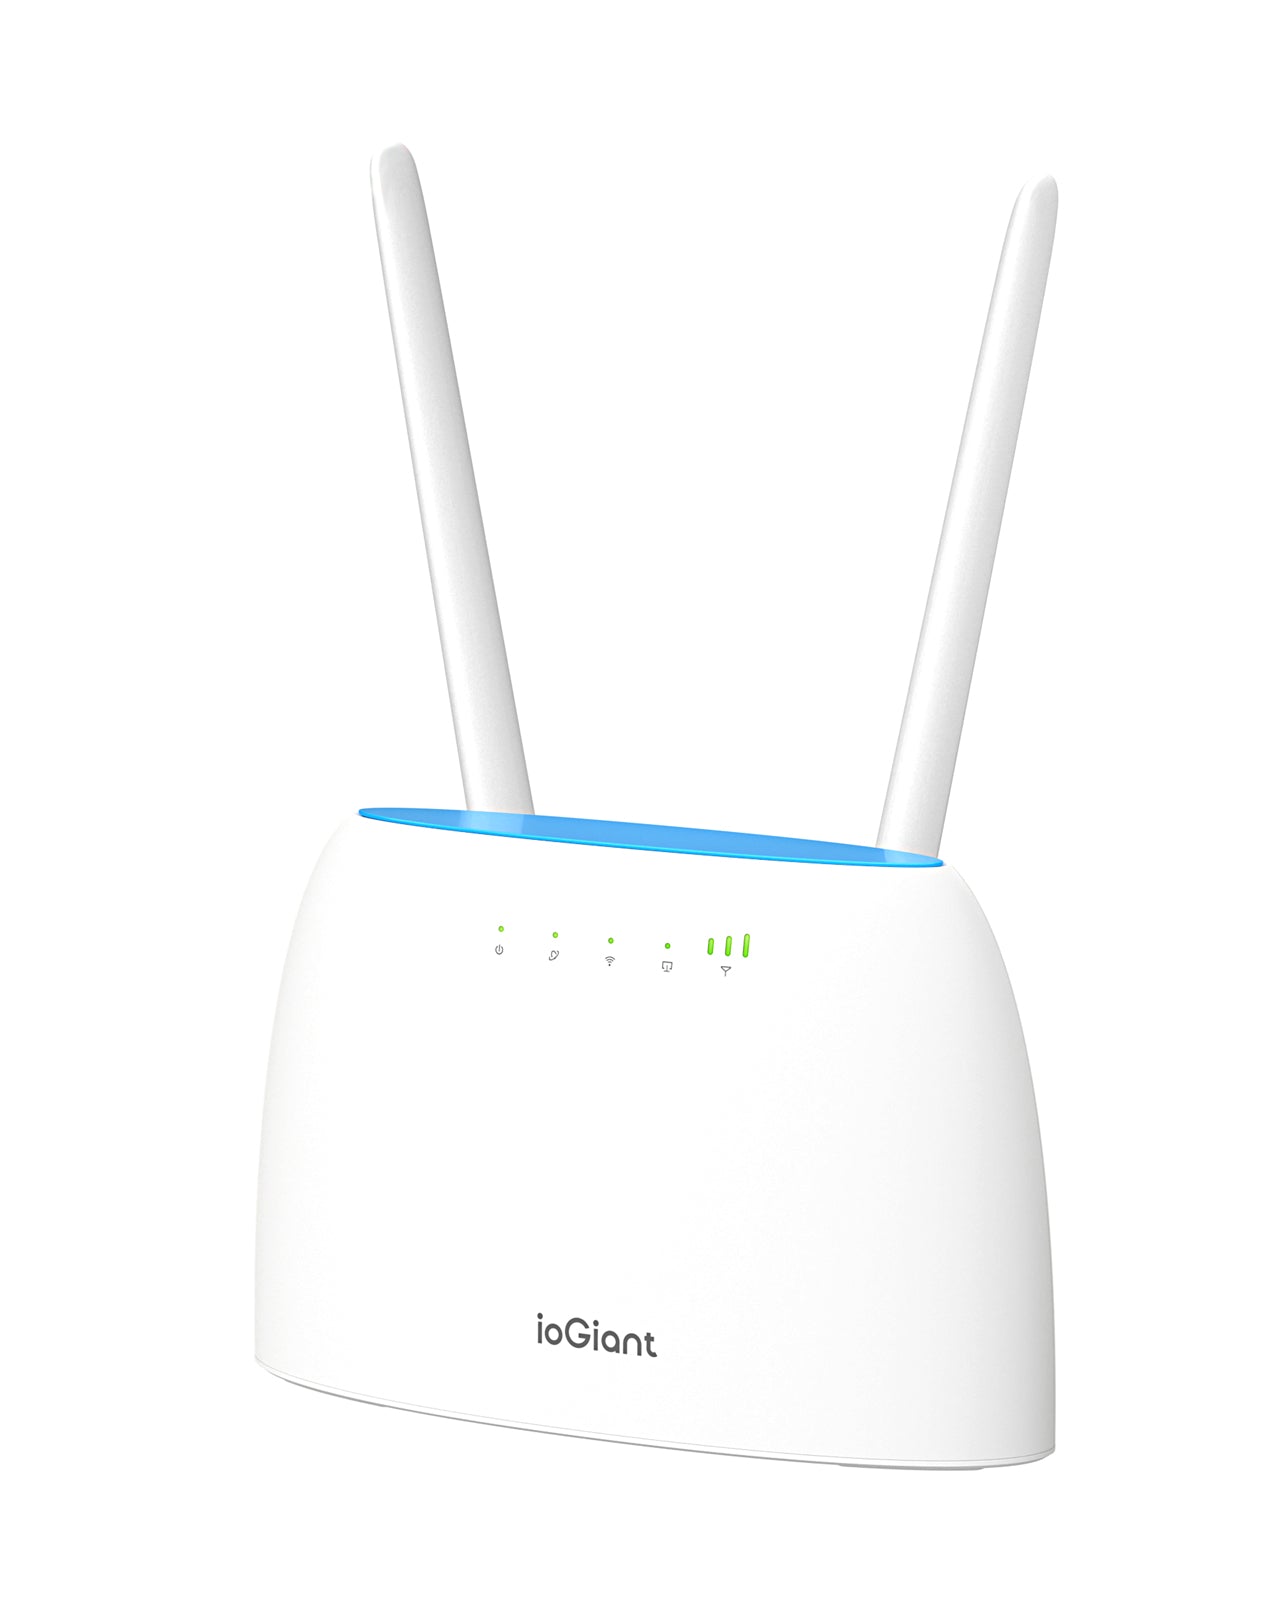 Routeur WiFi Modem 4G Avec Carte SIM,2.4GHz 150Mbps Point d'accès